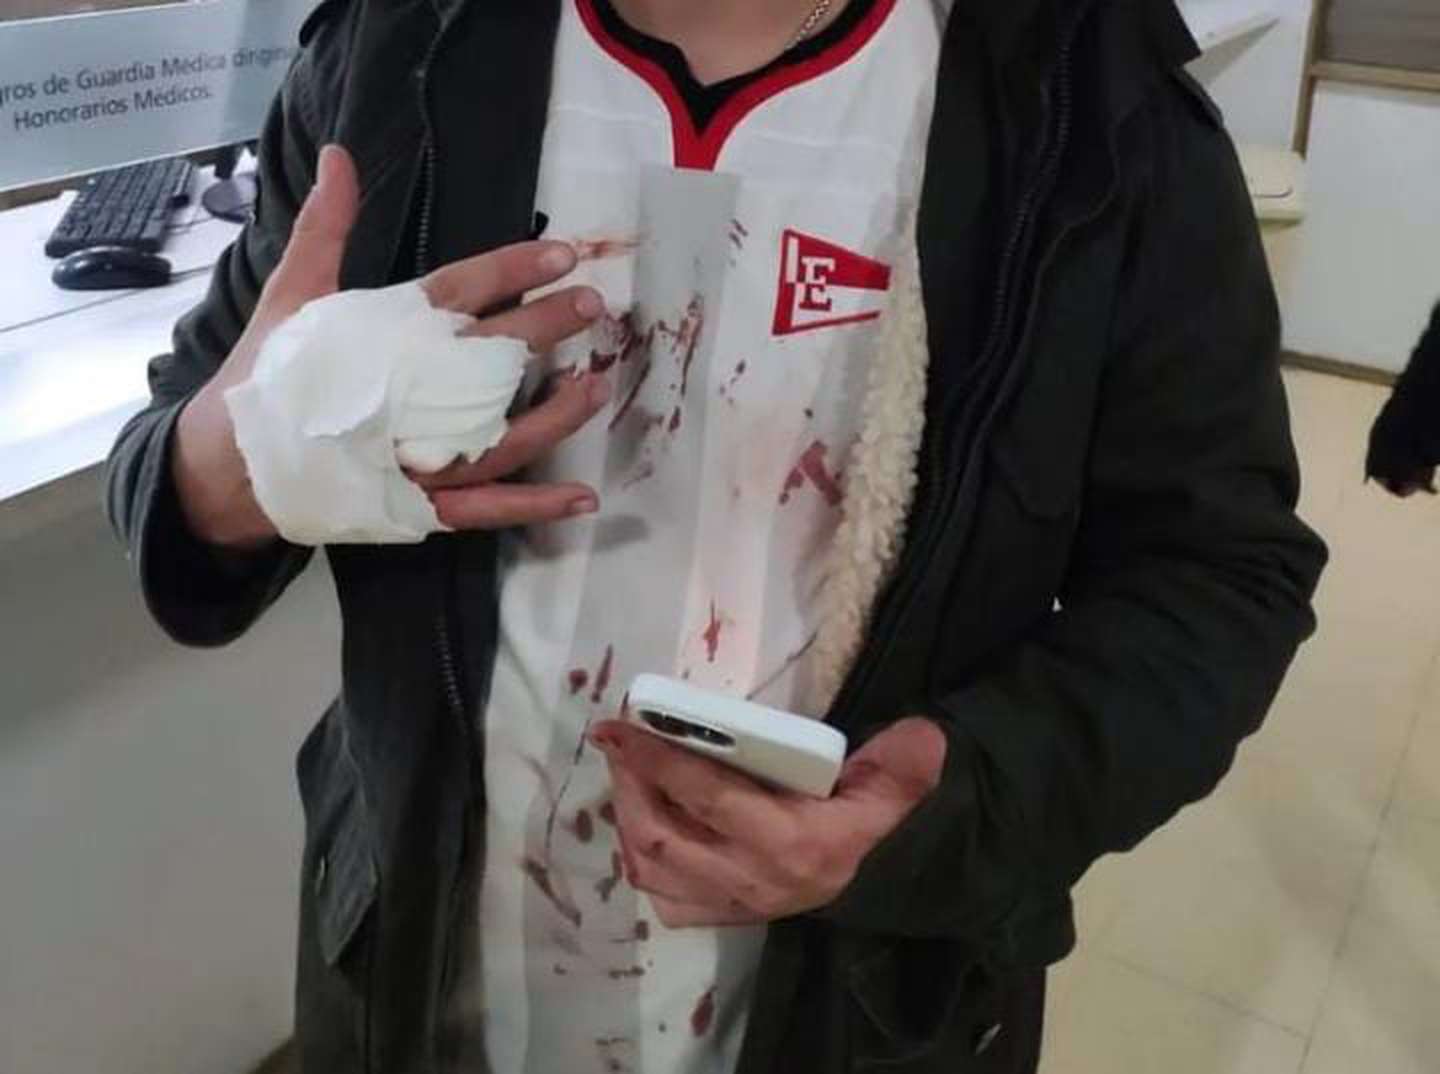 Hincha de Estudiantes herido tras la bengala lanzada por la parcialidad uruguaya (Foto: Instagram somosedlp)